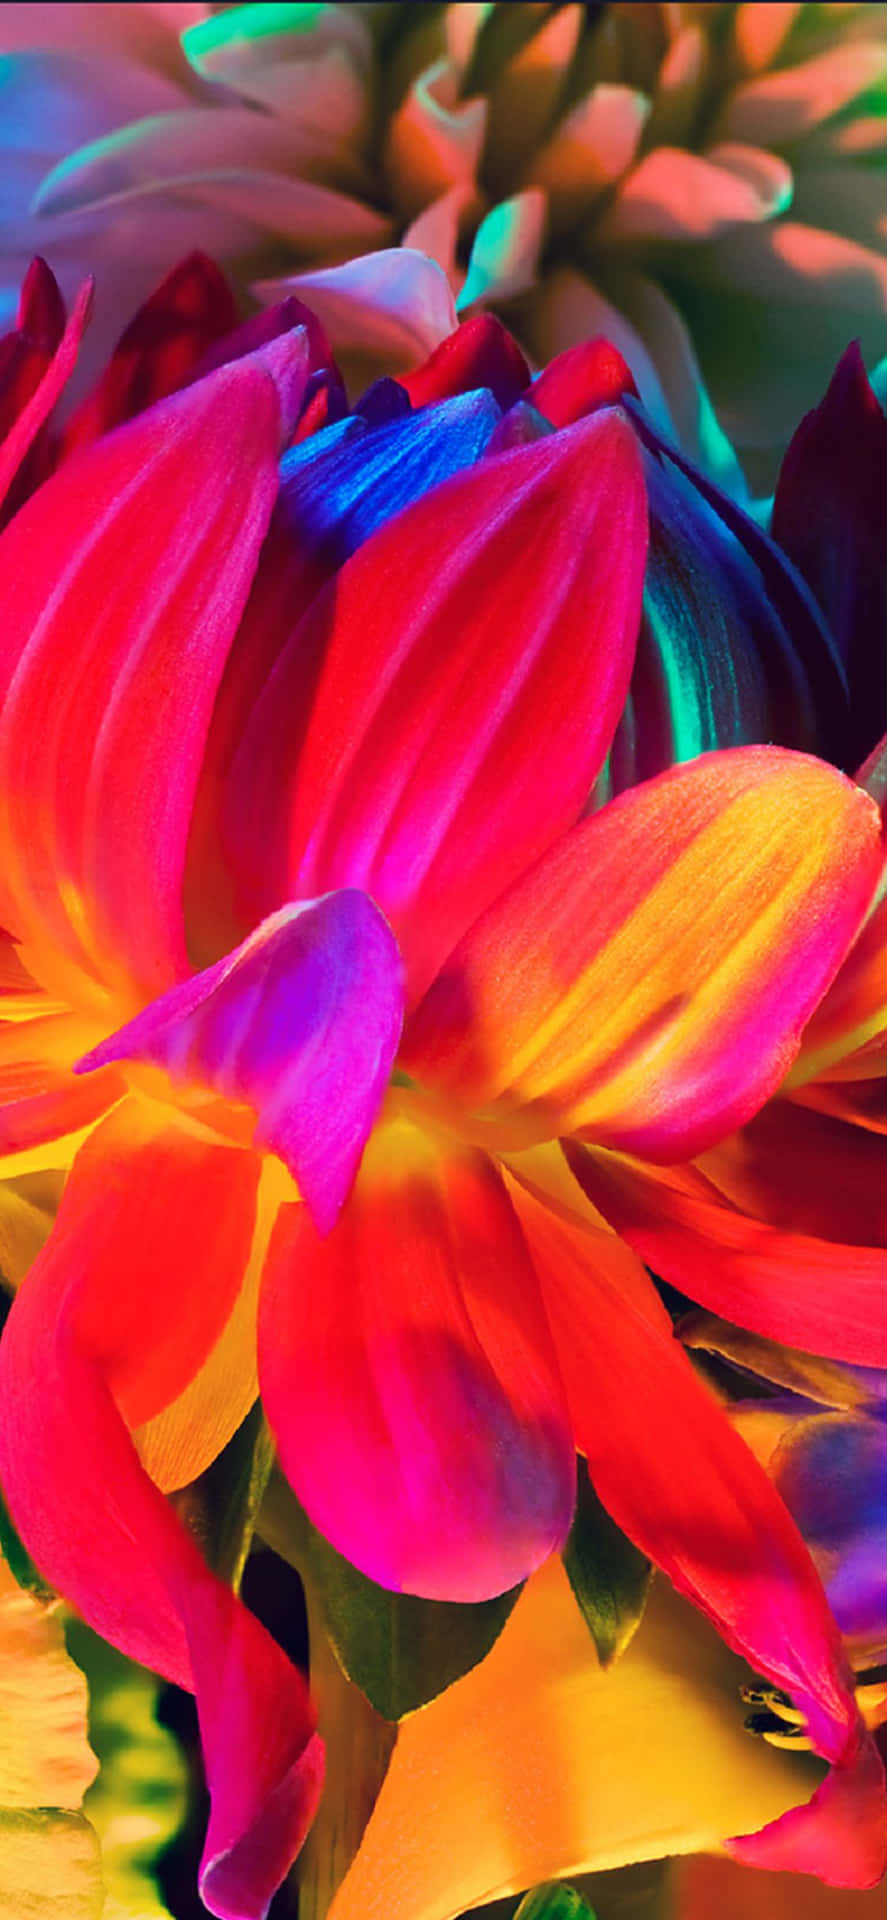 Nyd et smukt regnbuehav af blomster på din iPhone! Wallpaper